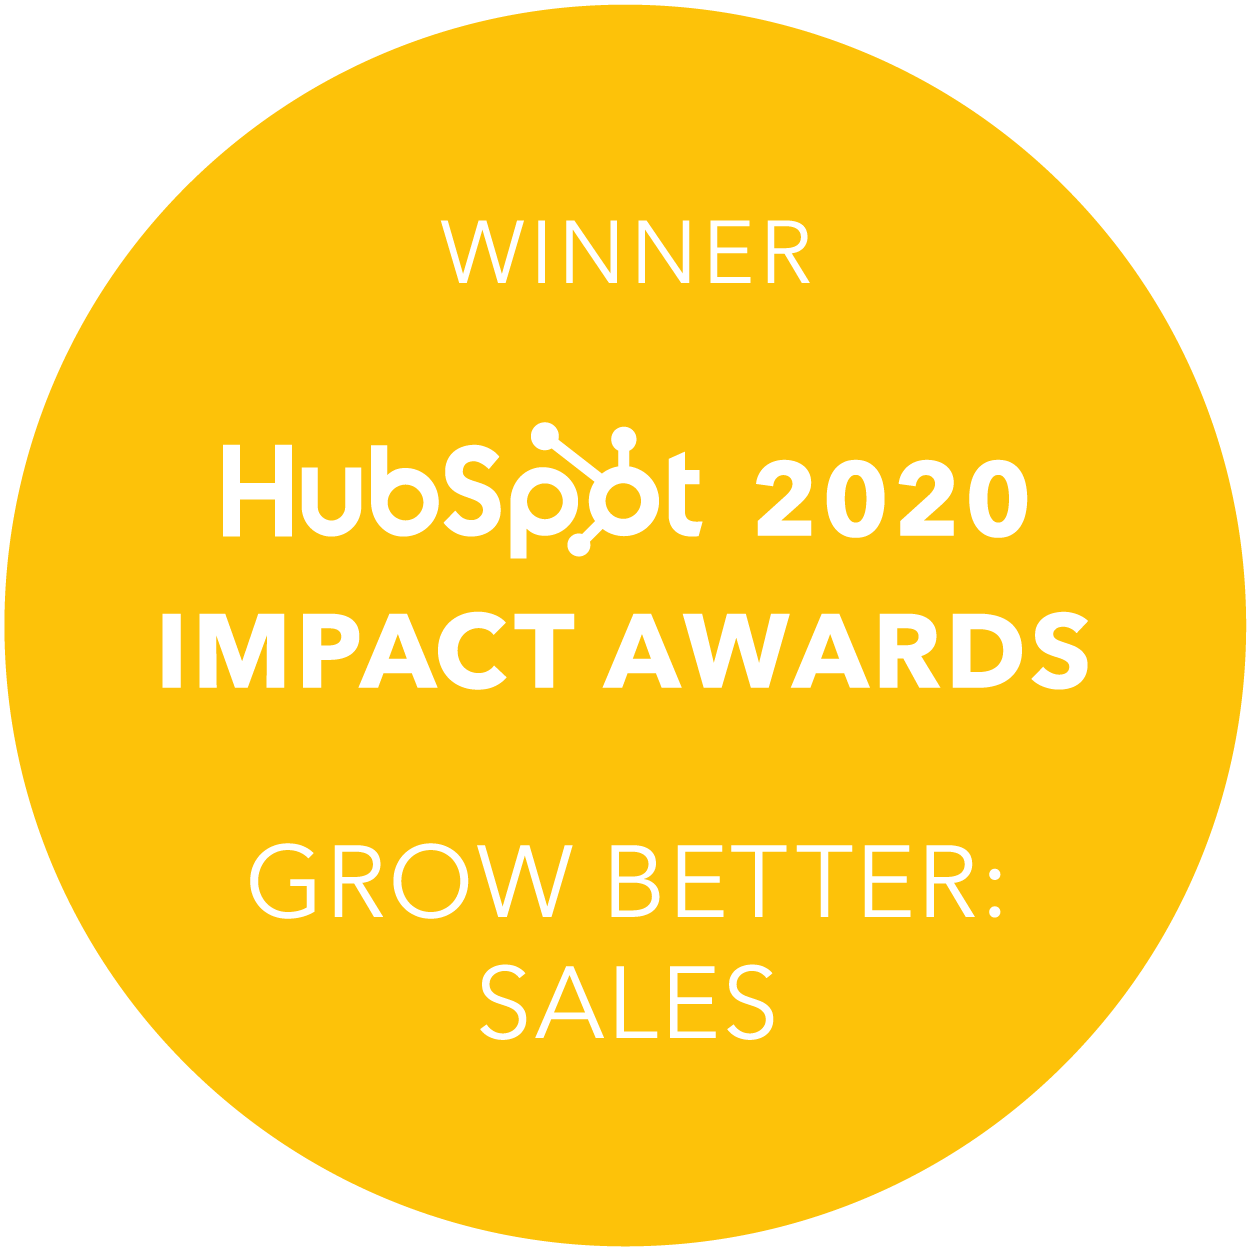 RevM HubSpot Award Winner and HubSpot Partner Agency in Surrey